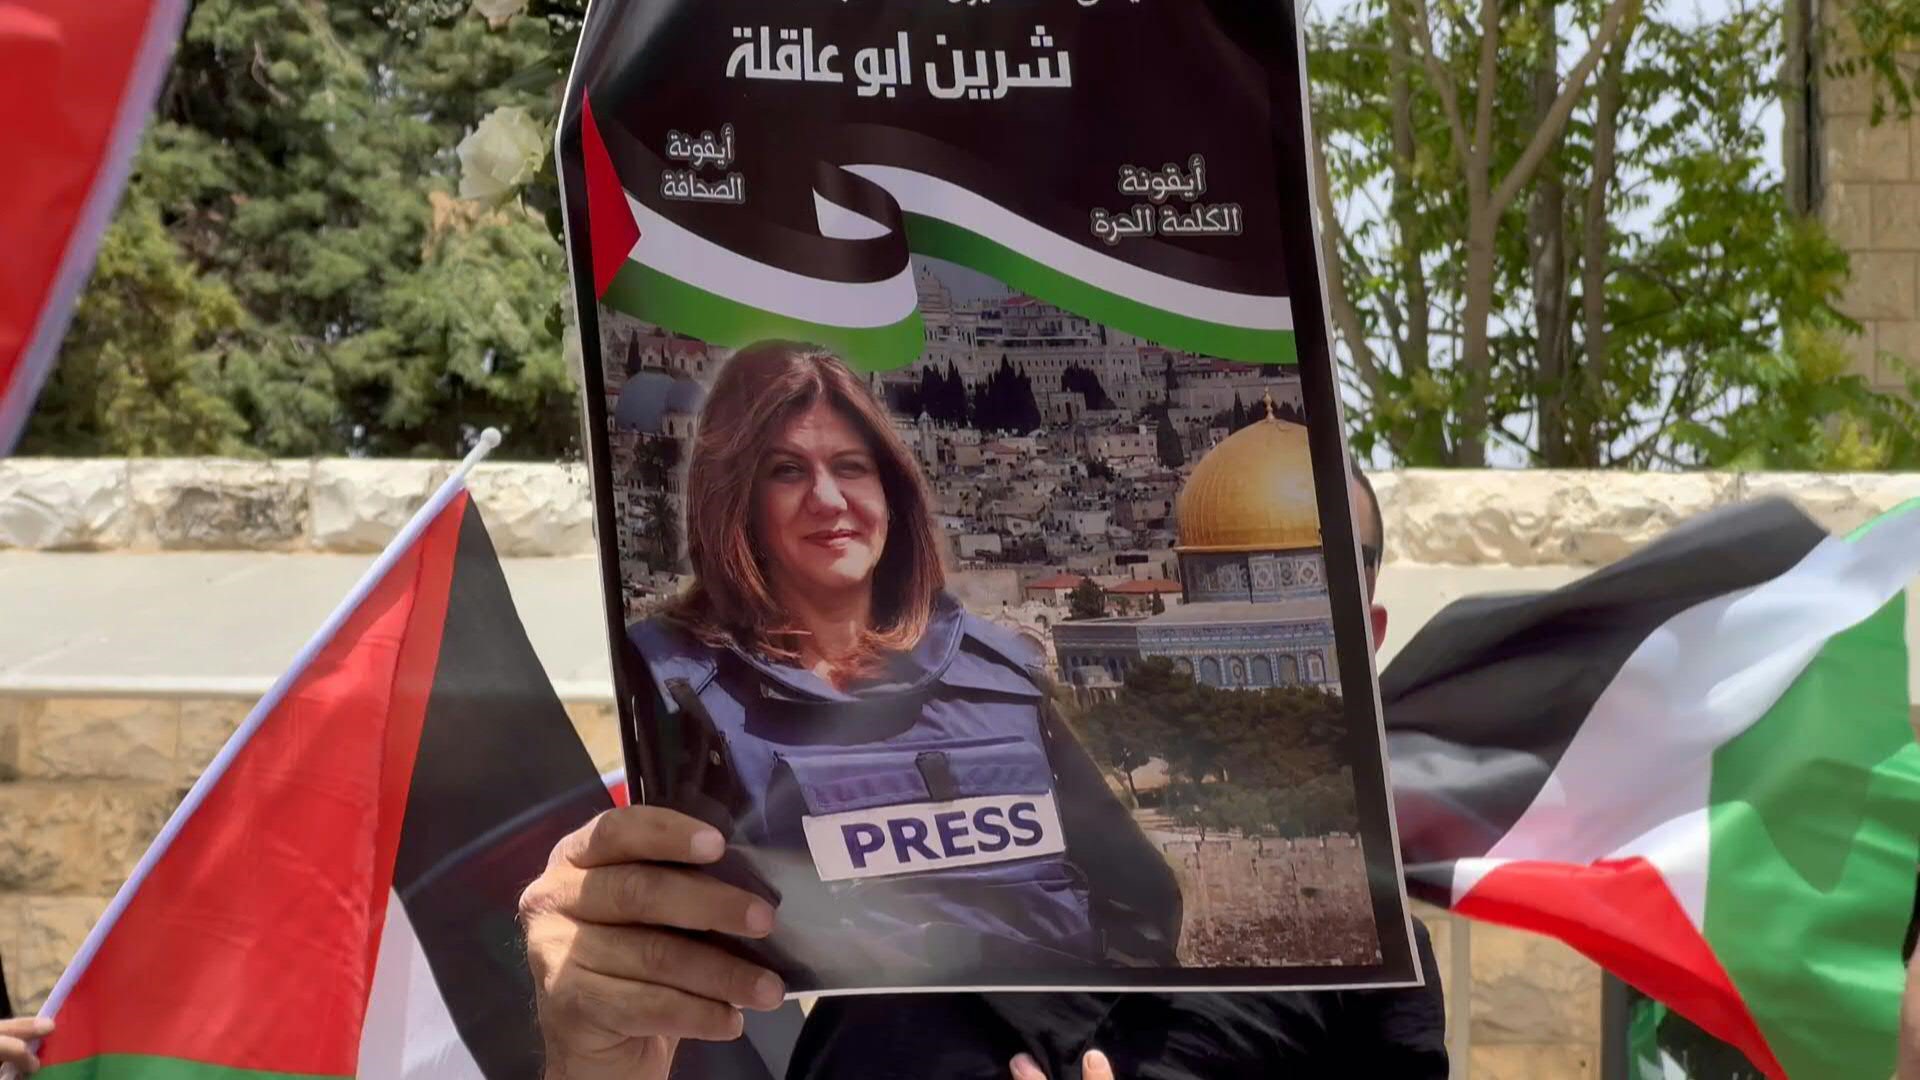 La investigación de Israel concluyó que no puede determinarse el origen de la bala que mató a la periodista palestina Shireen Abu Akleh